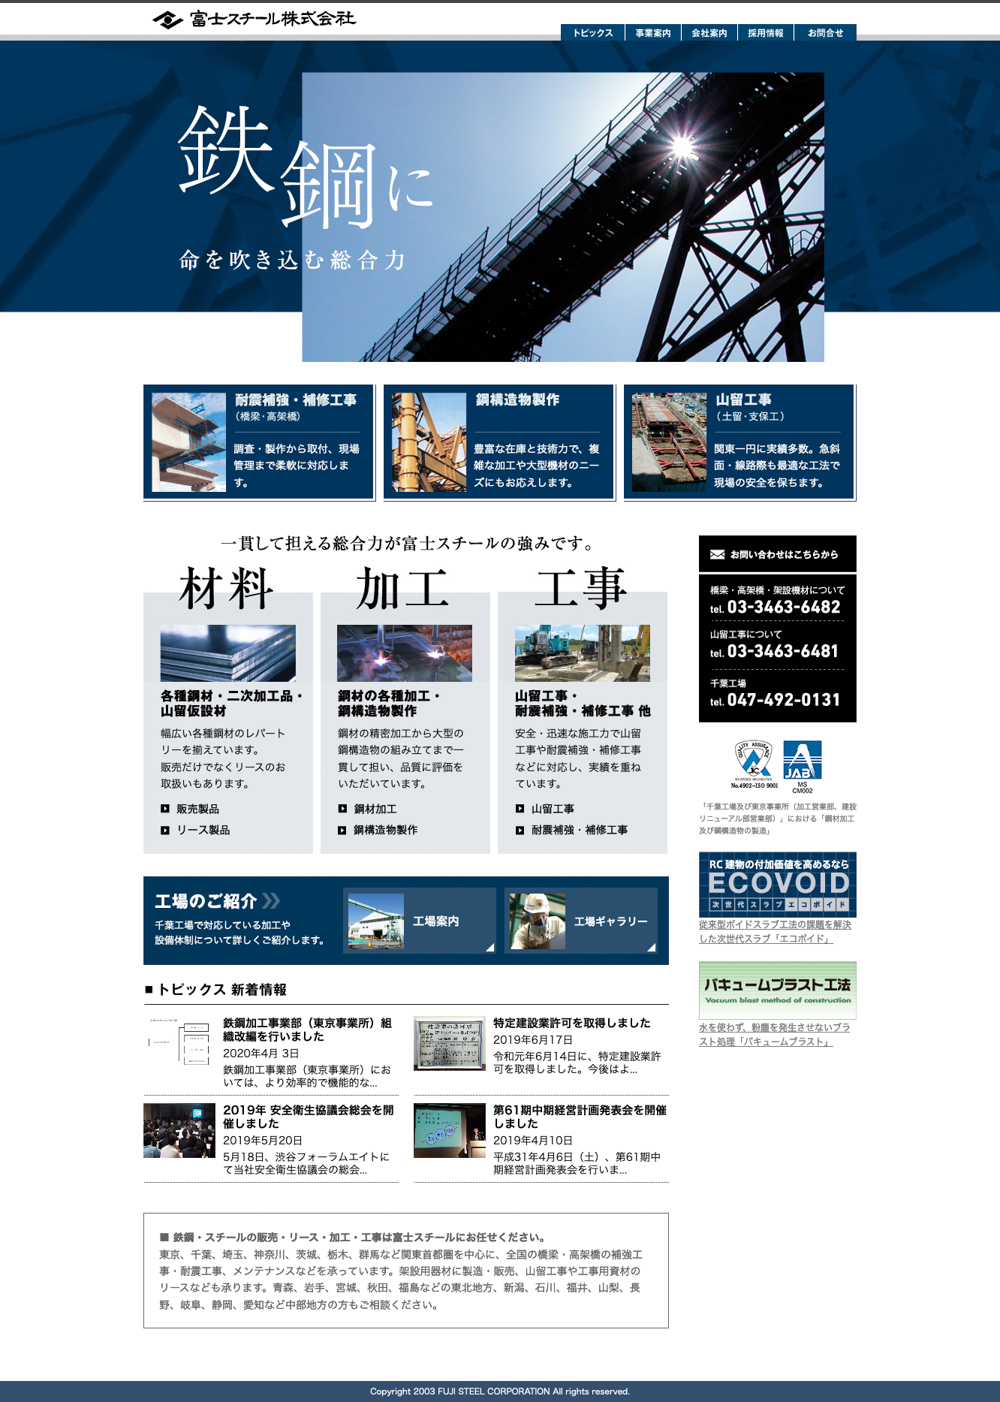 富士スチール株式会社 様 | 企業オフィシャルサイトTOPページ